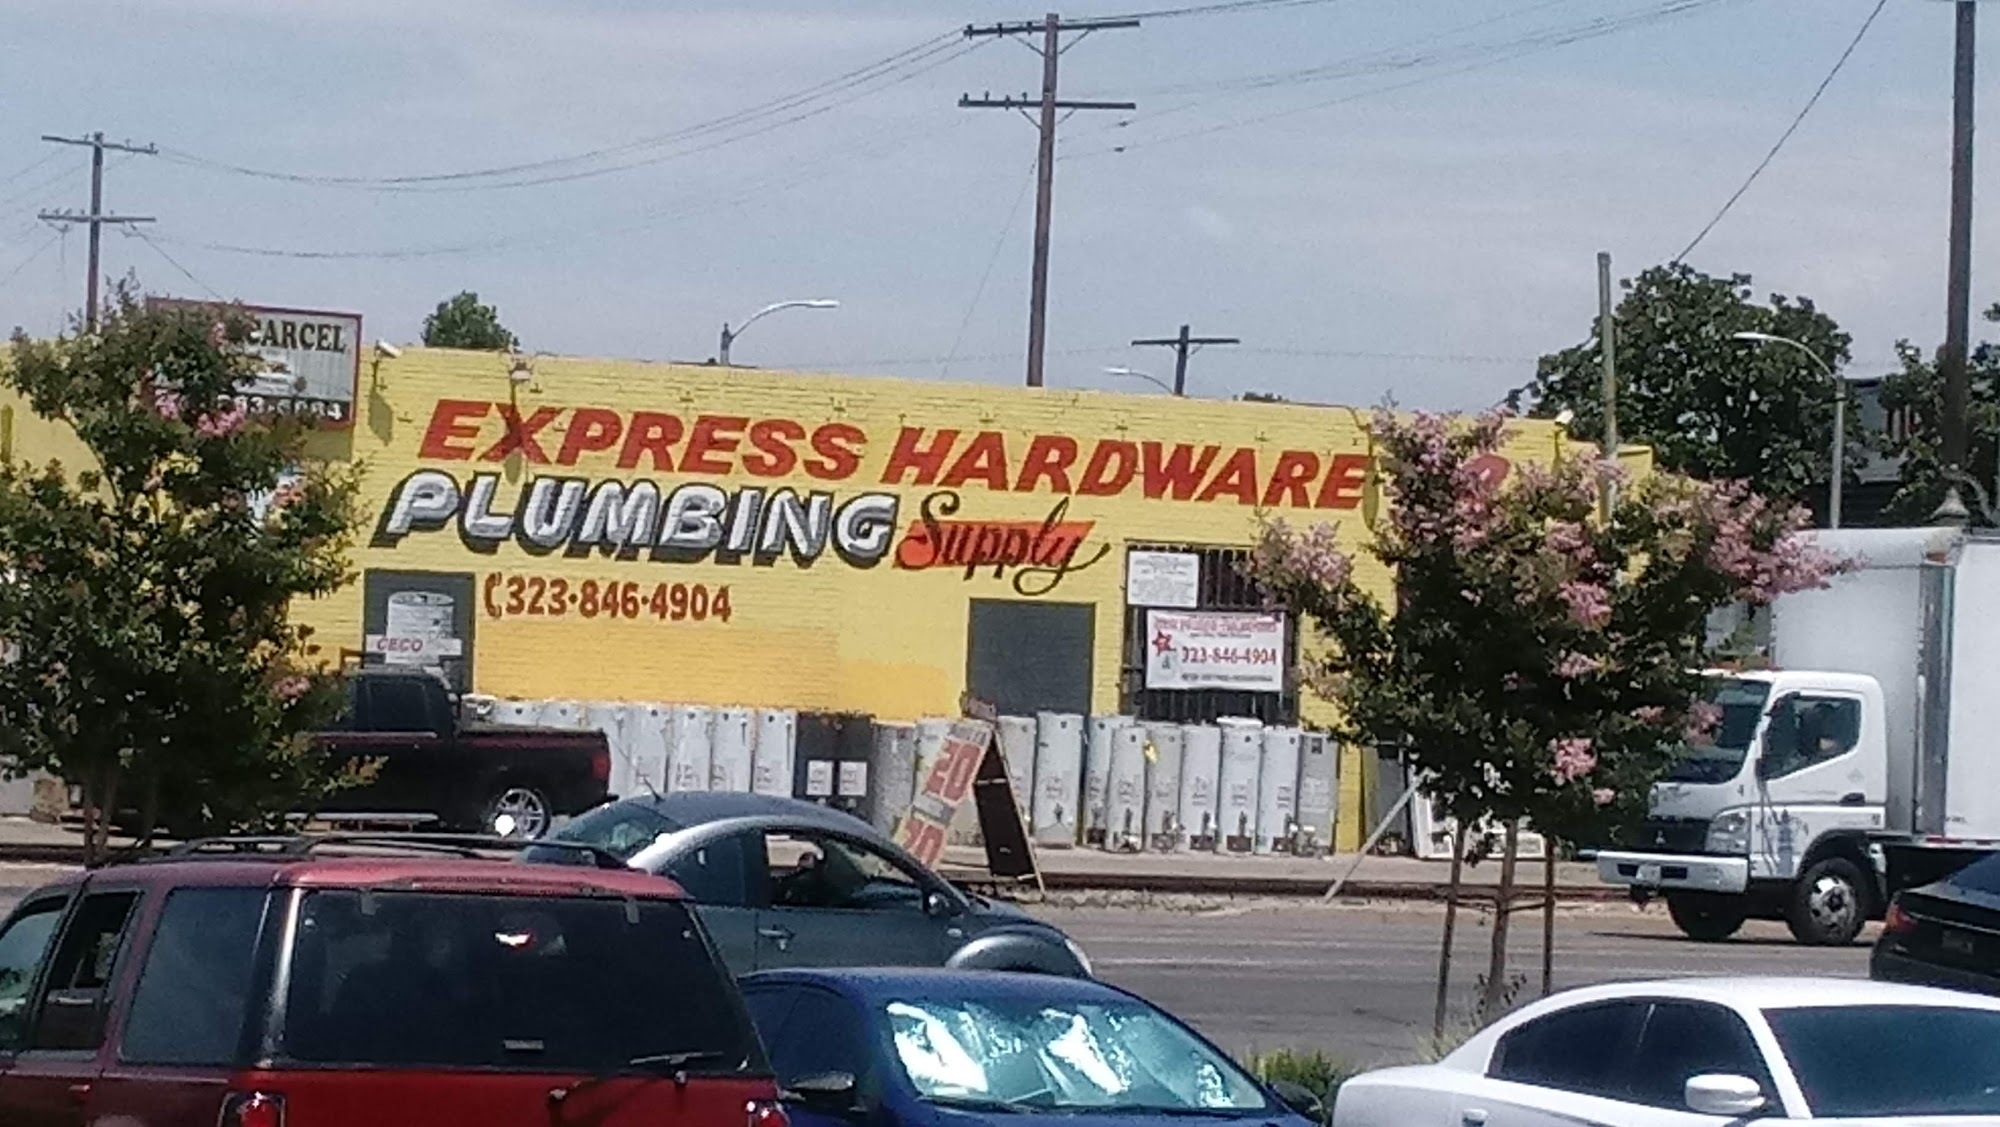 Express Hardware #2